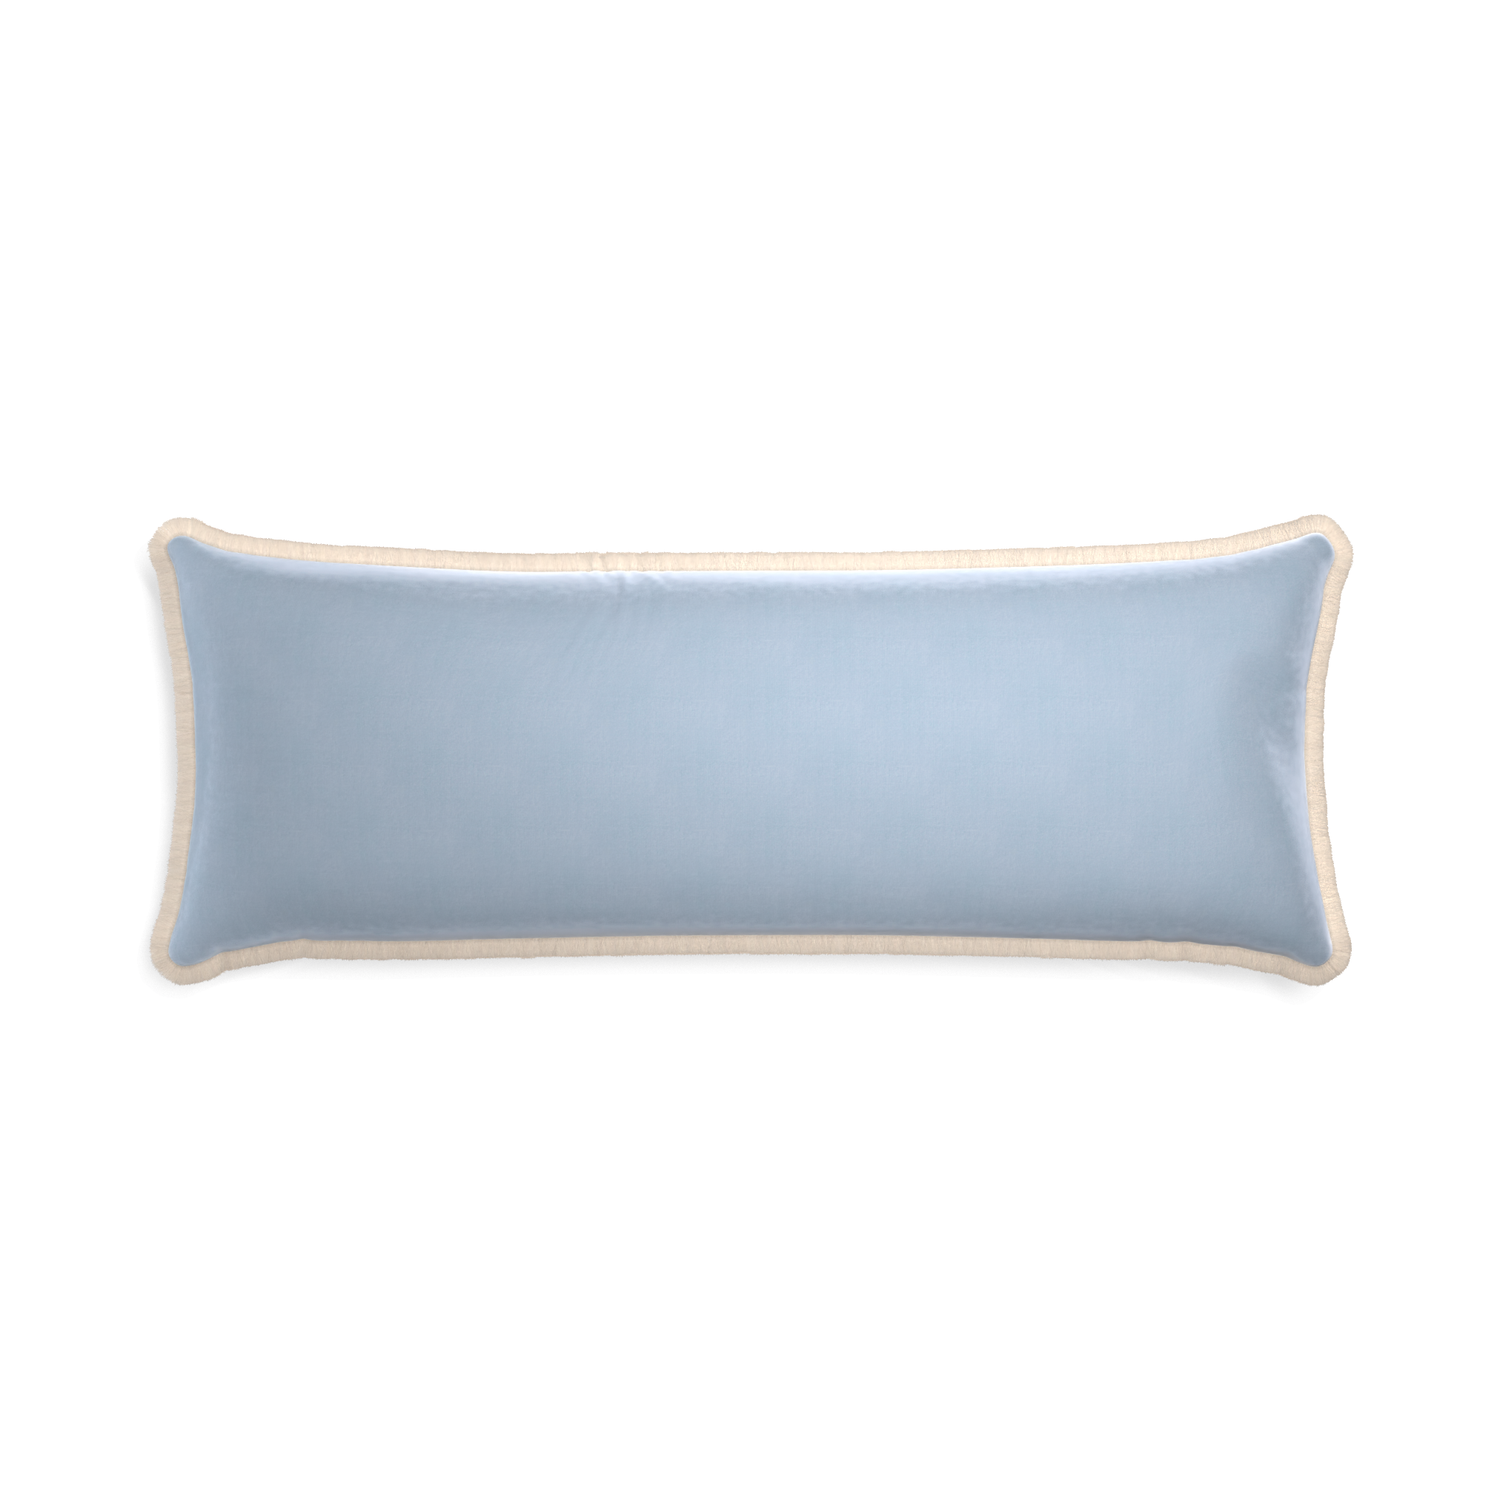 rectangle light blue velvet pillow with cream fringe